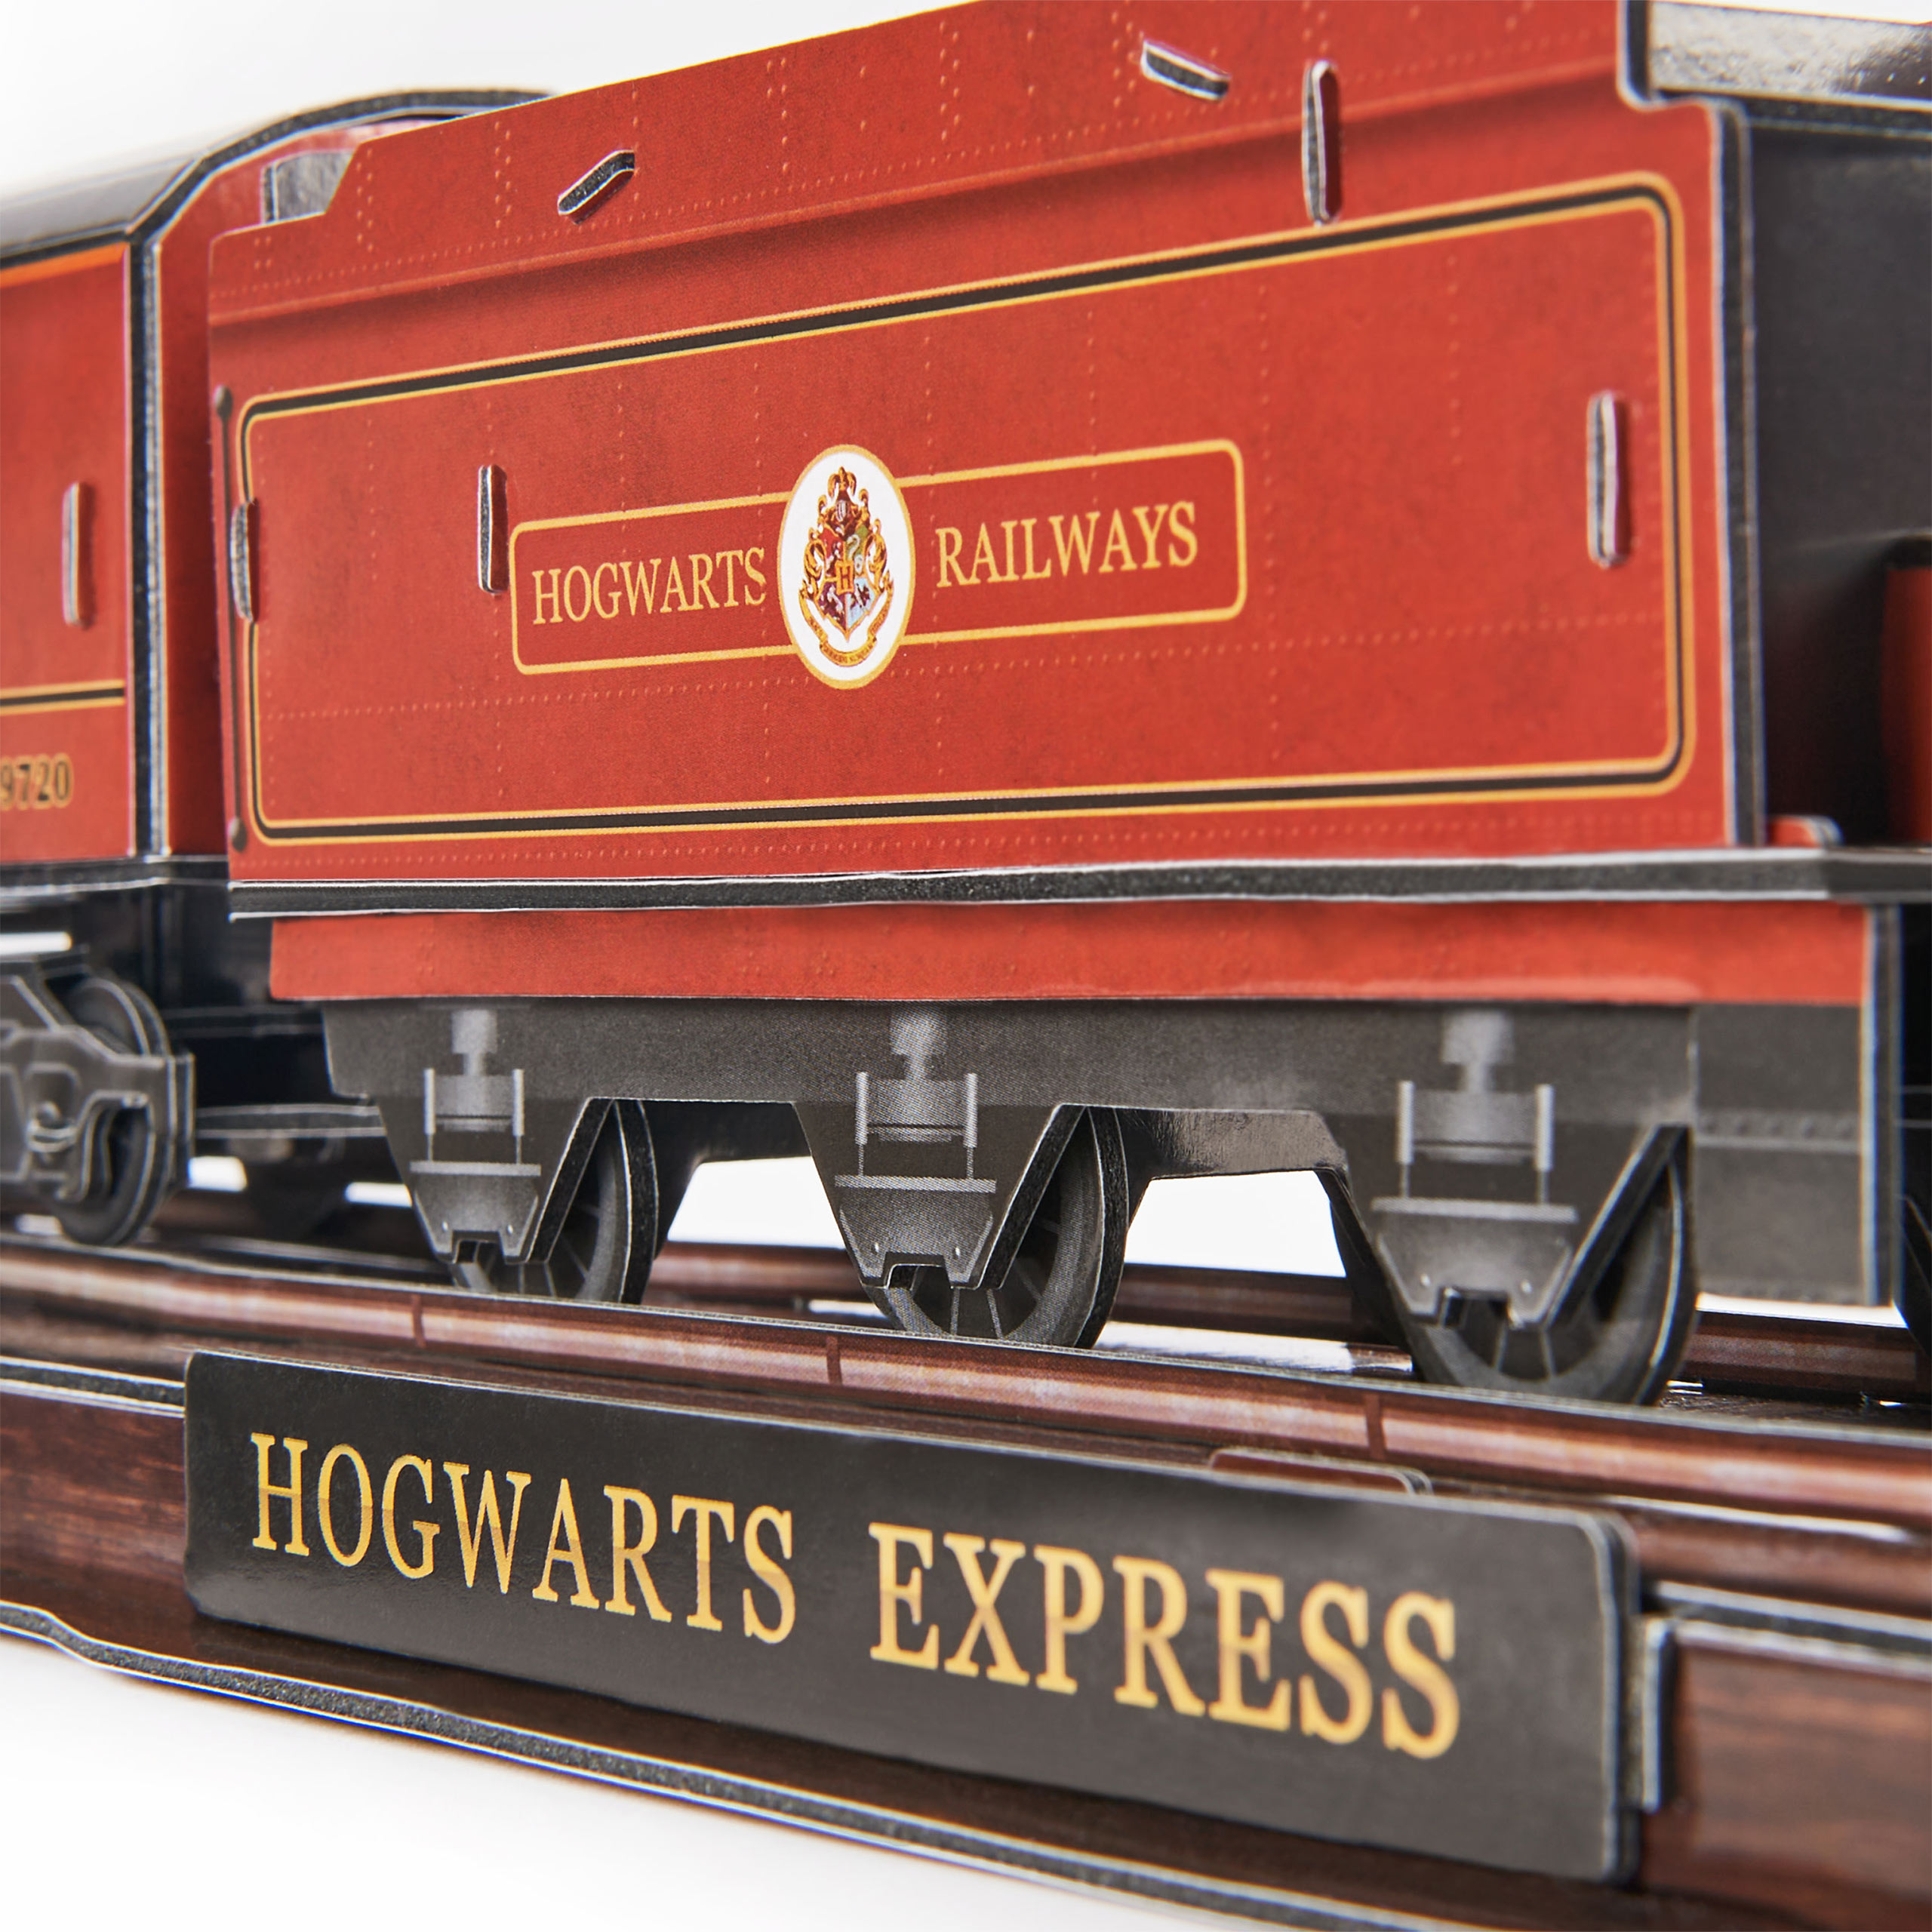 Hogwarts Express 4D Build Modell Bausatz - Harry Potter